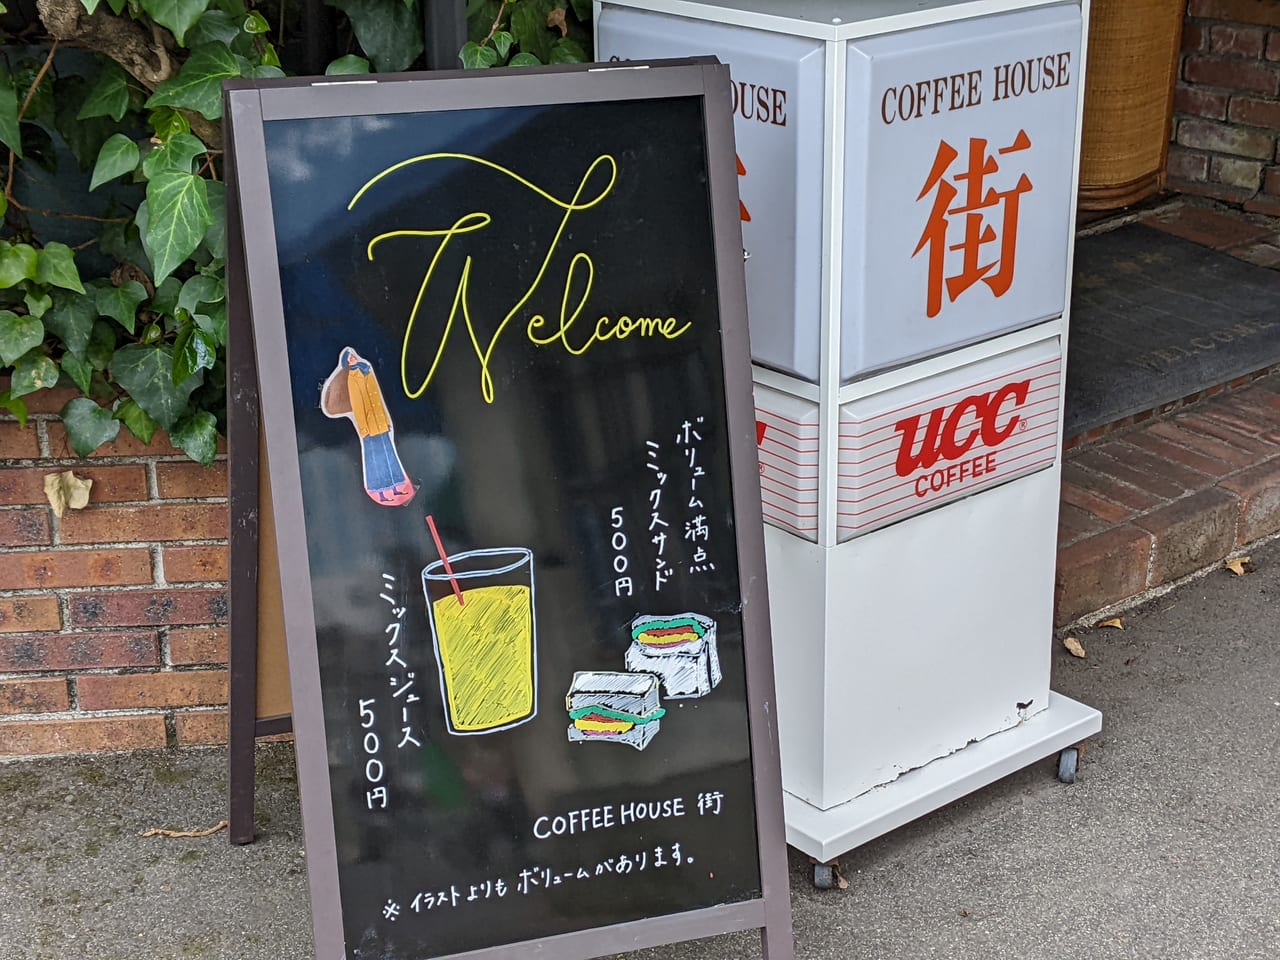 「COFFEE HOUSE 街」の看板